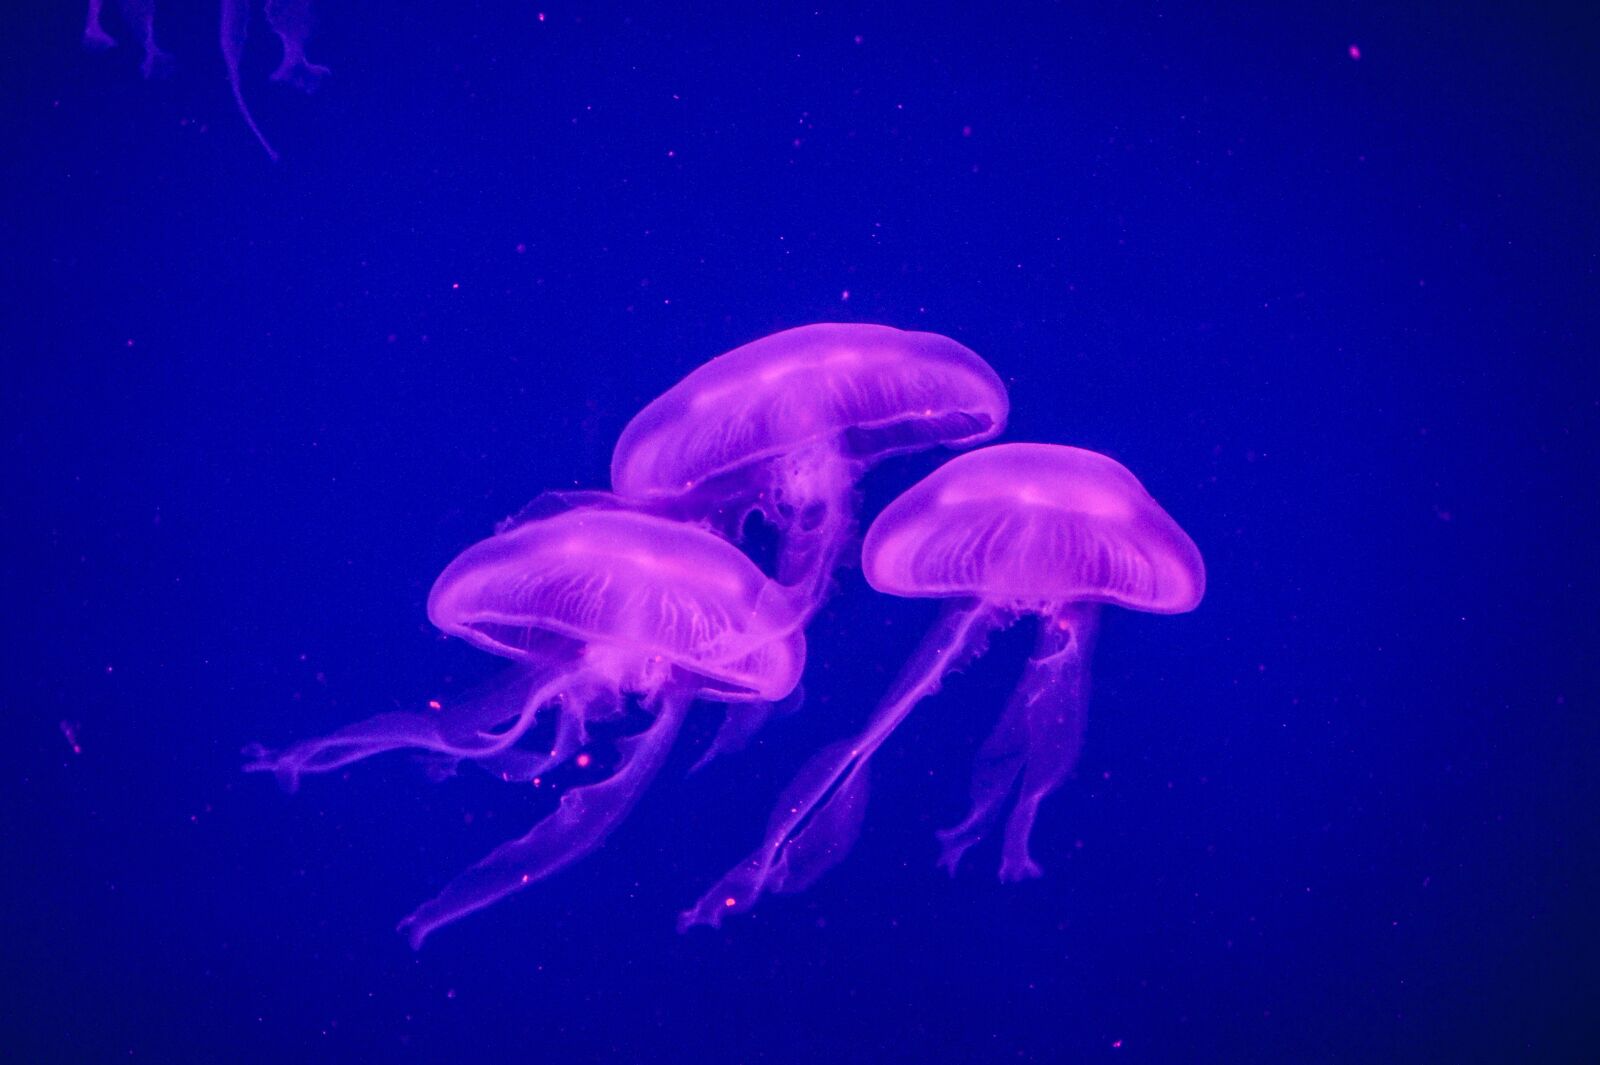 Sony SLT-A33 sample photo. Jellyfish, ocean, sea photography